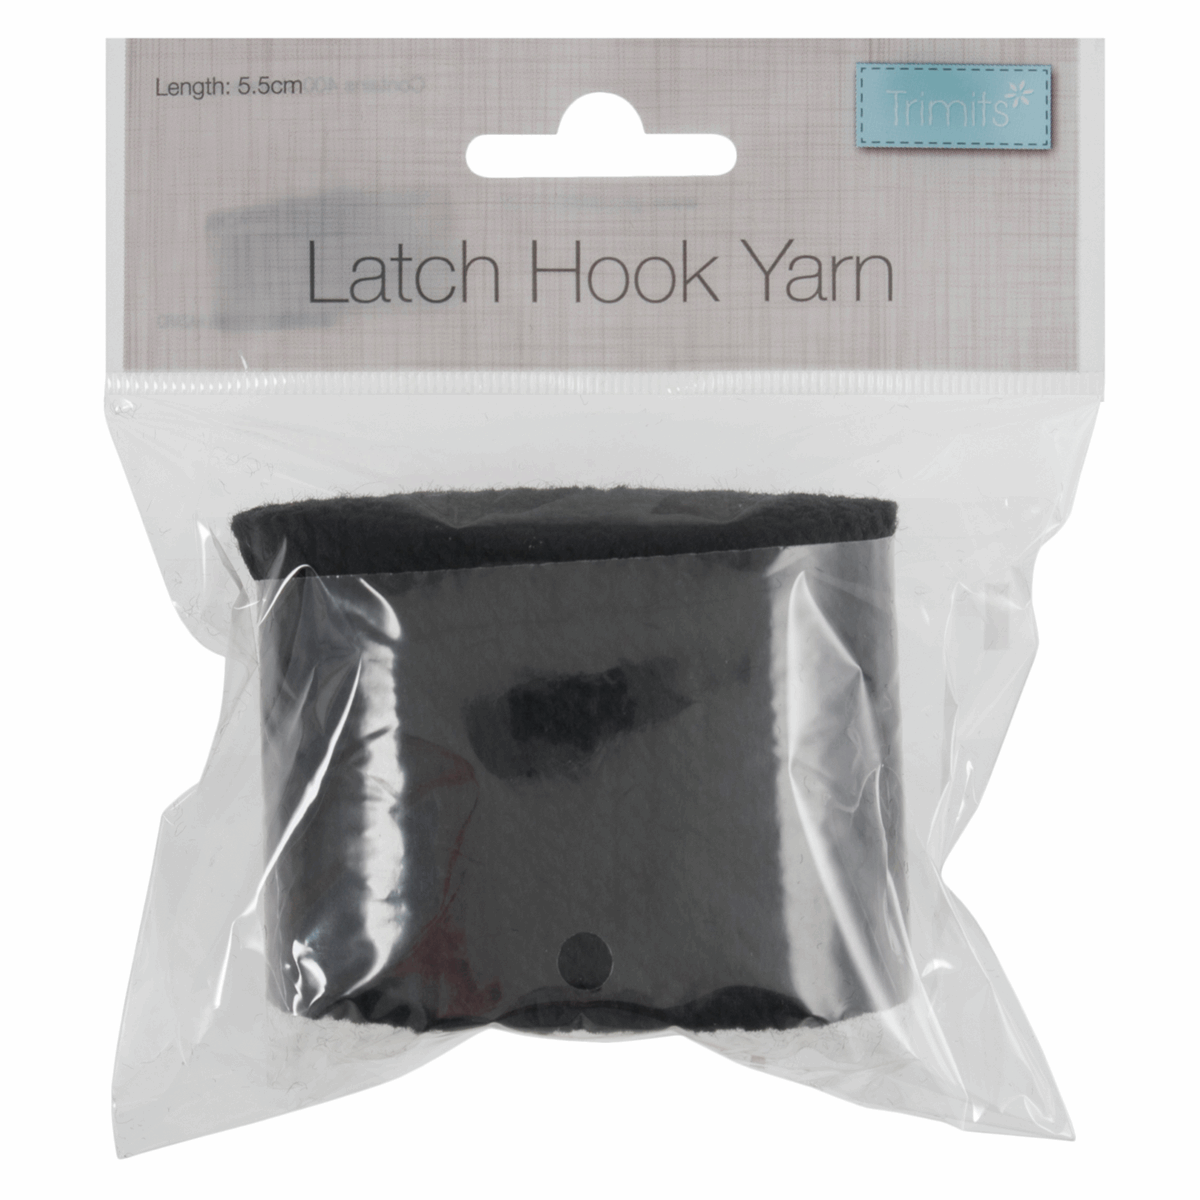 Latch Hook Yarn 5.5cm - Black